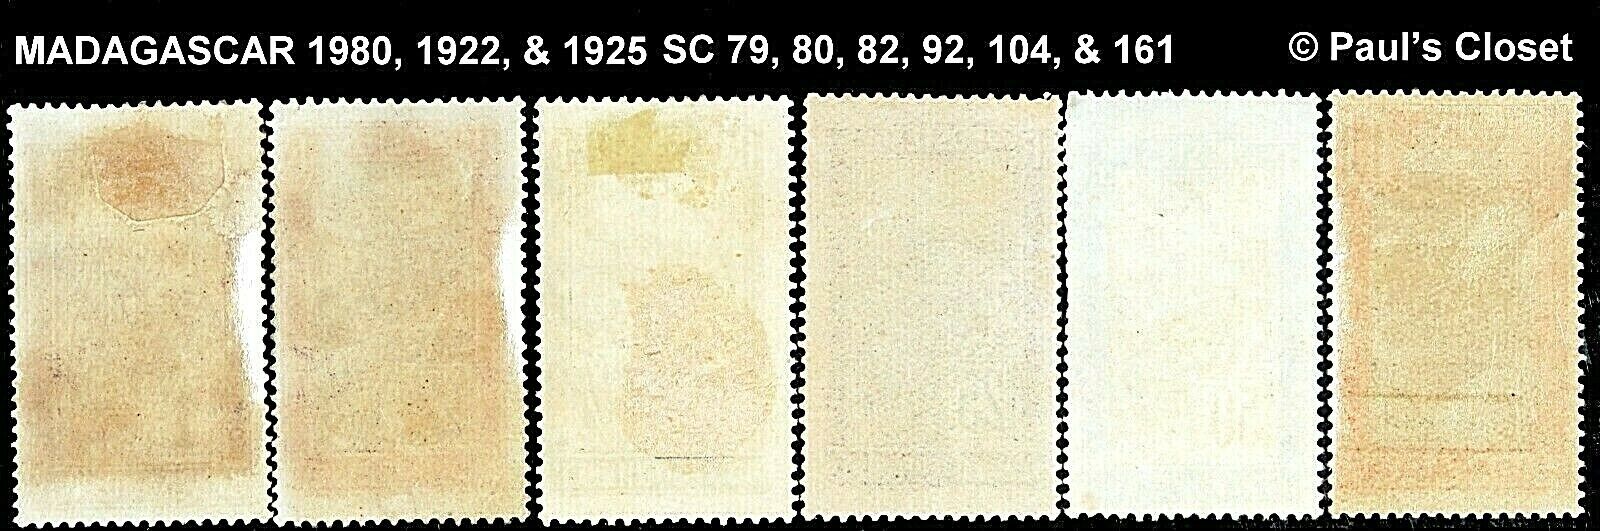 MADAGASCAR 1908 -1925 SC 79, 80, 92 &104 TRANS IN SEDAN CHAIR MNH (2) UNG (2) FV Без бренда - фотография #2